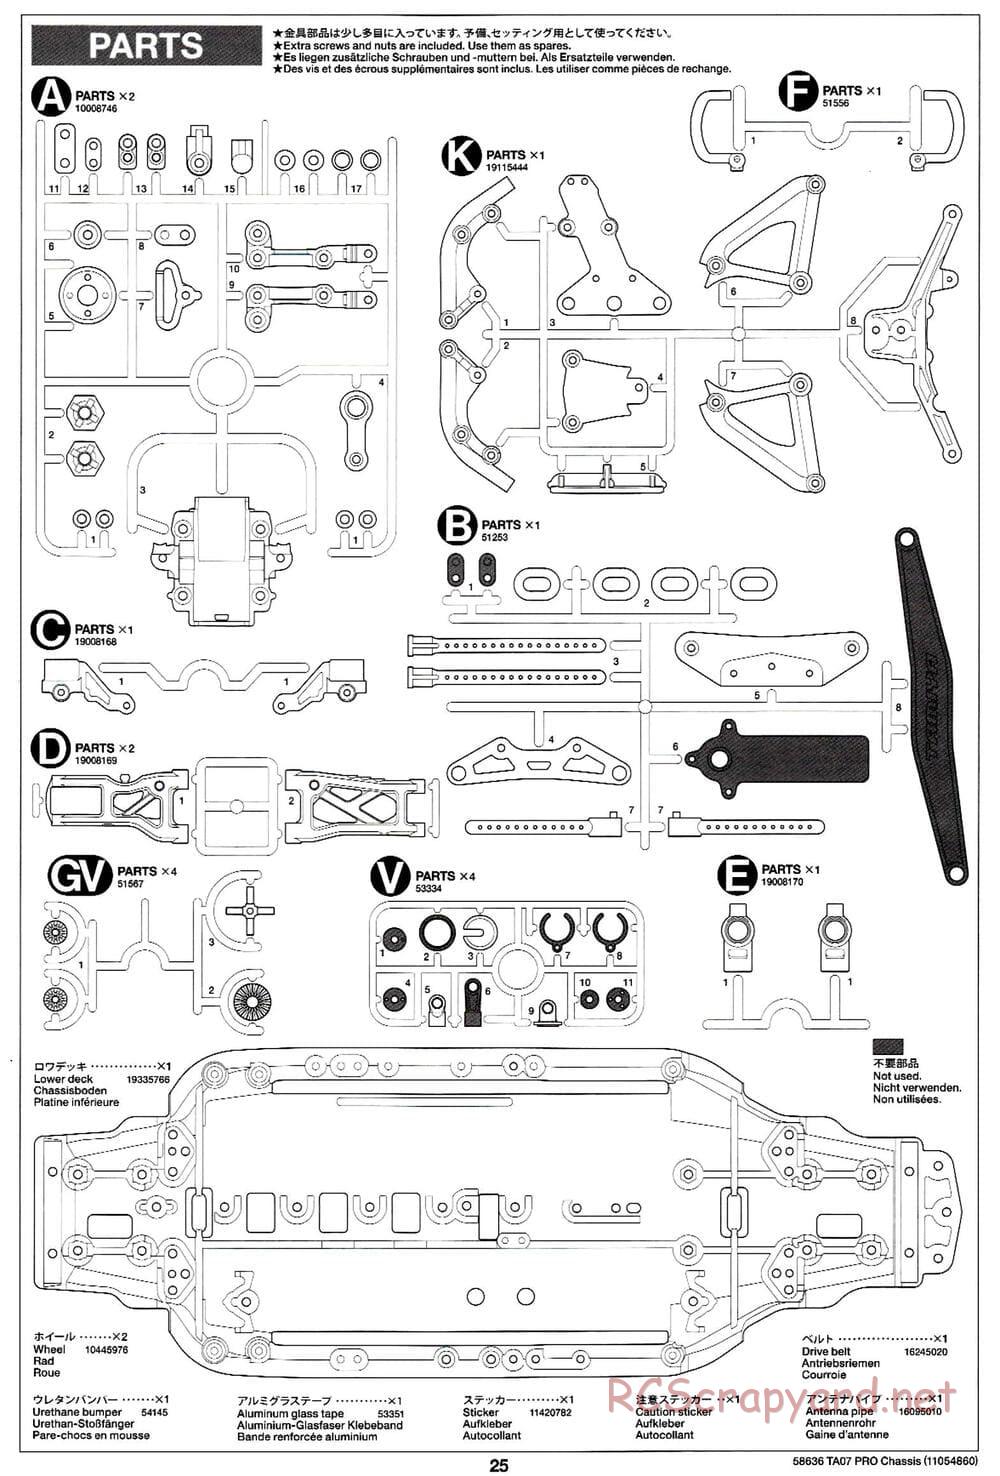 Tamiya - TA07 Pro Chassis - Manual - Page 25